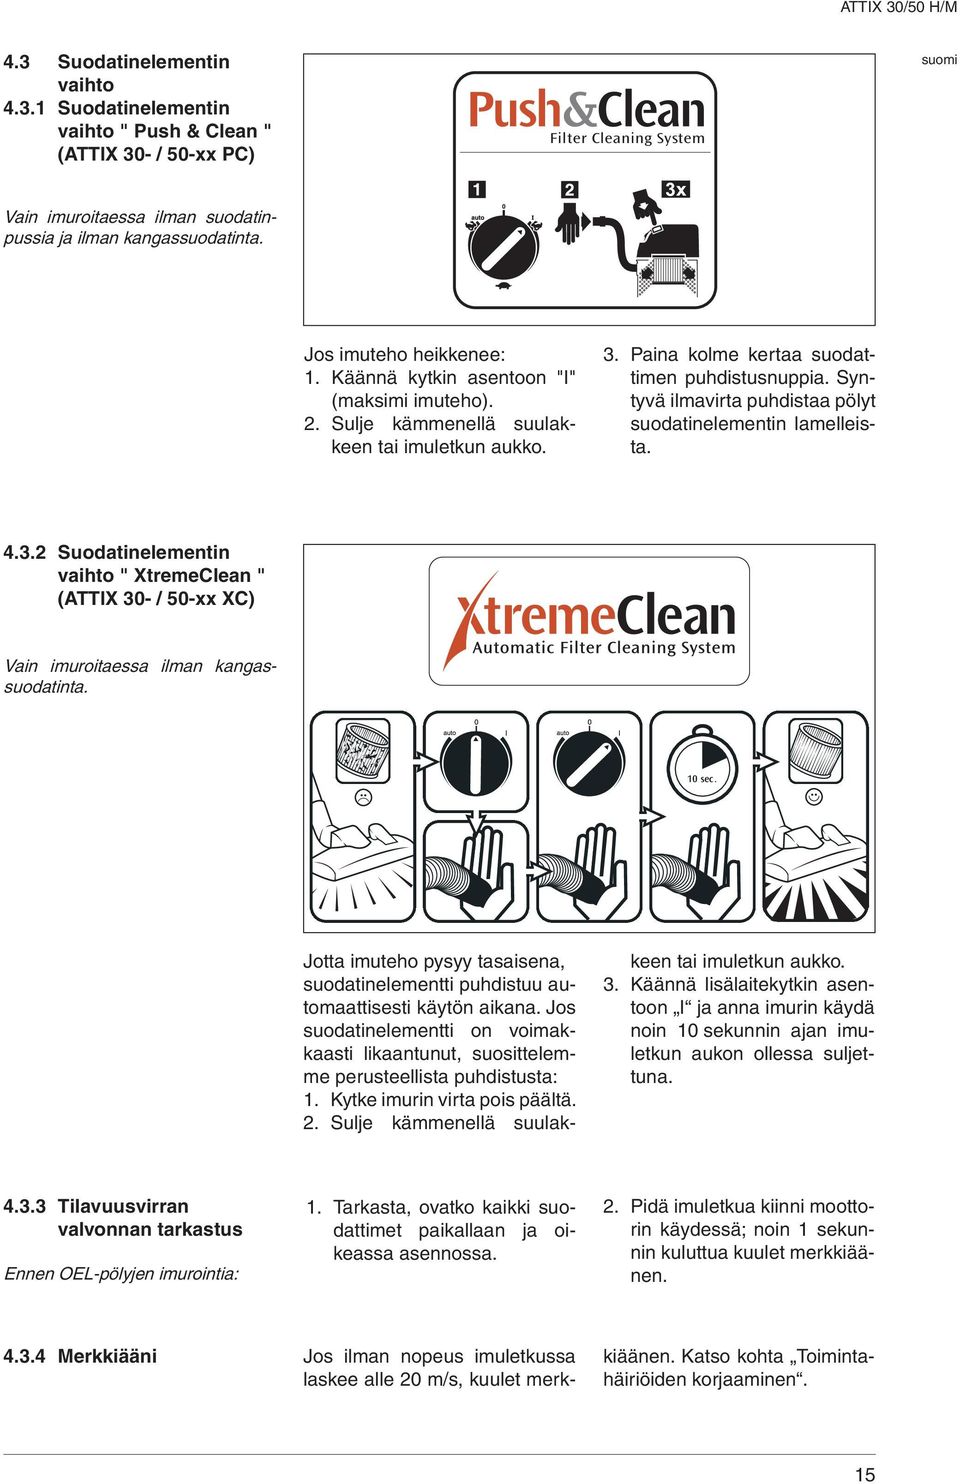 Syntyvä ilmavirta puhdistaa pölyt suodatinelementin lamelleista. 4.3.2 Suodatinelementin vaihto " XtremeClean " (TTIX 30- / 50-xx XC) Vain imuroitaessa ilman kangassuodatinta. 10 sec.